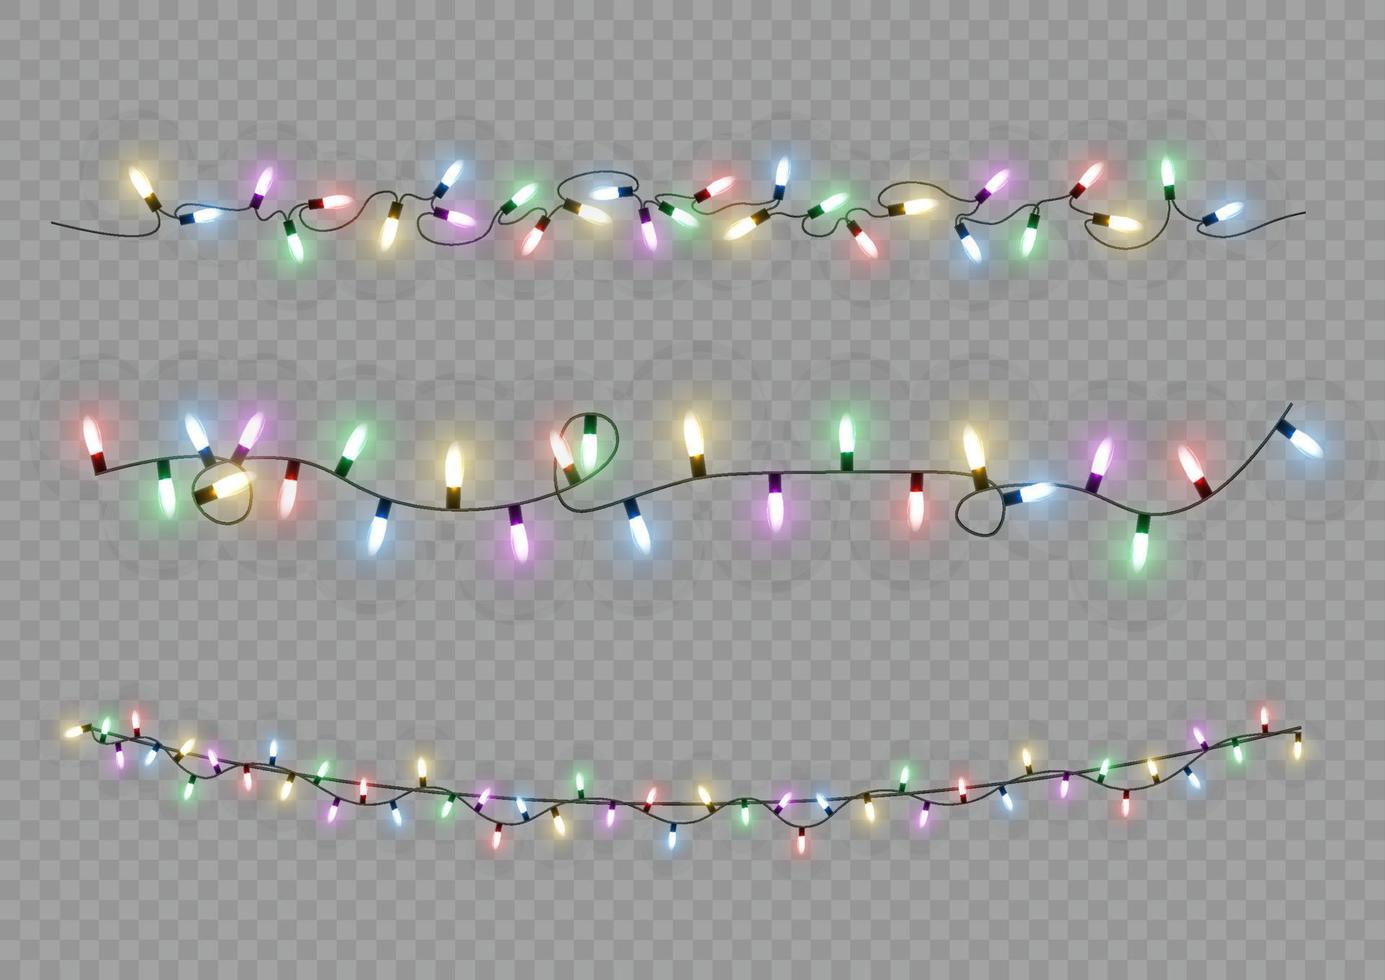 luces de Navidad. línea vectorial con bombillas de luz incandescente. conjunto de ilustración de lámpara de neón led de guirnalda brillante de navidad dorada. vector